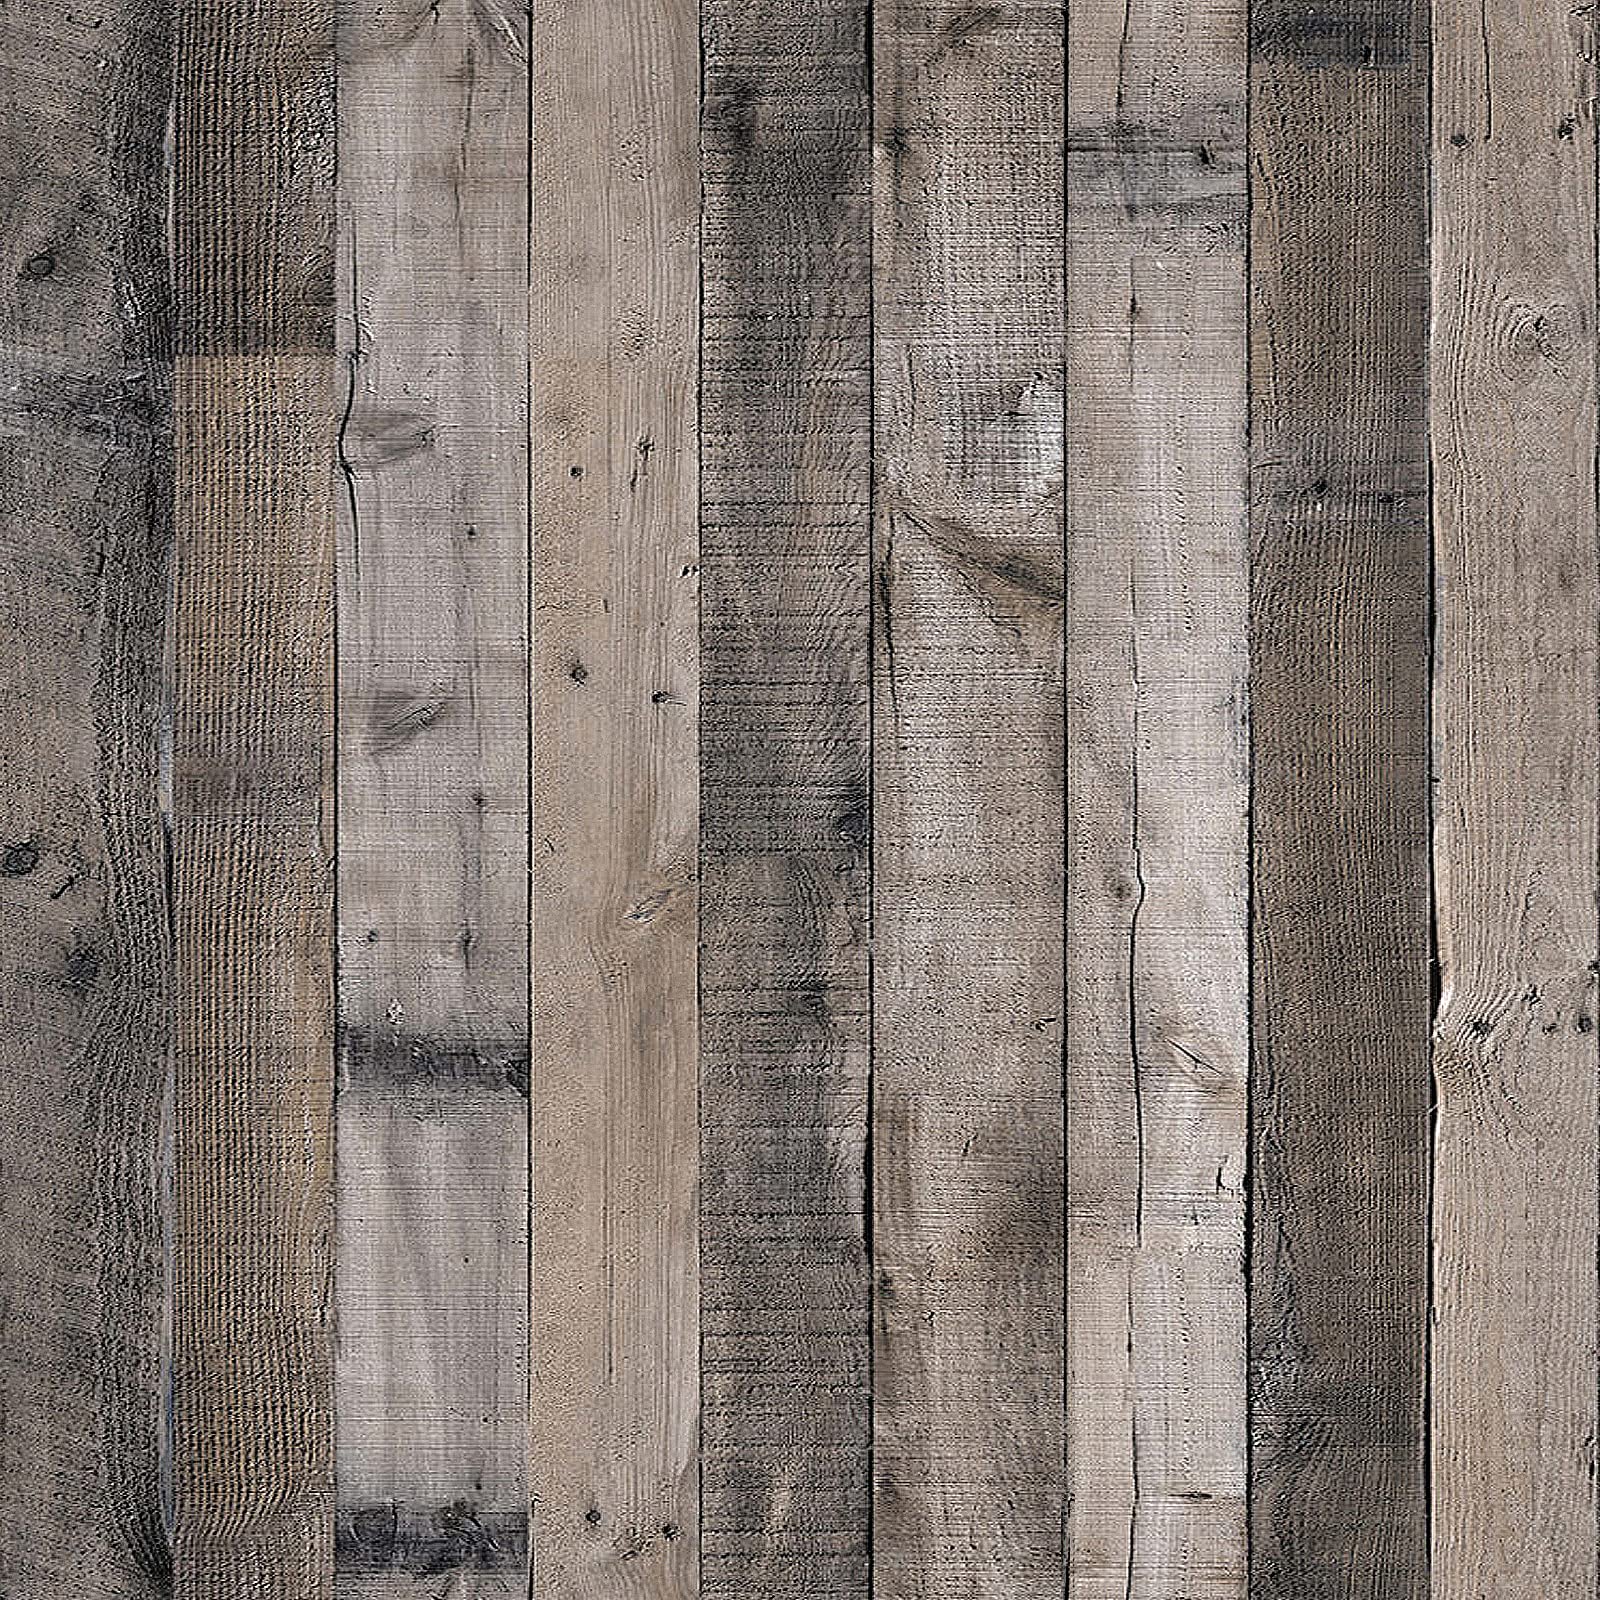 Chào mừng bạn đến với thế giới của Livebor Gray Peel and Stick - Gạch dán tường gỗ có thể dễ dàng lắp đặt và được làm từ chất liệu chất lượng cao, màu sắc tự nhiên, mang đến cho không gian của bạn vẻ đẹp hoang dã. Hãy xem hình ảnh để khám phá cách sử dụng sản phẩm này trong căn phòng của bạn và biến điều đó thành hiện thực.